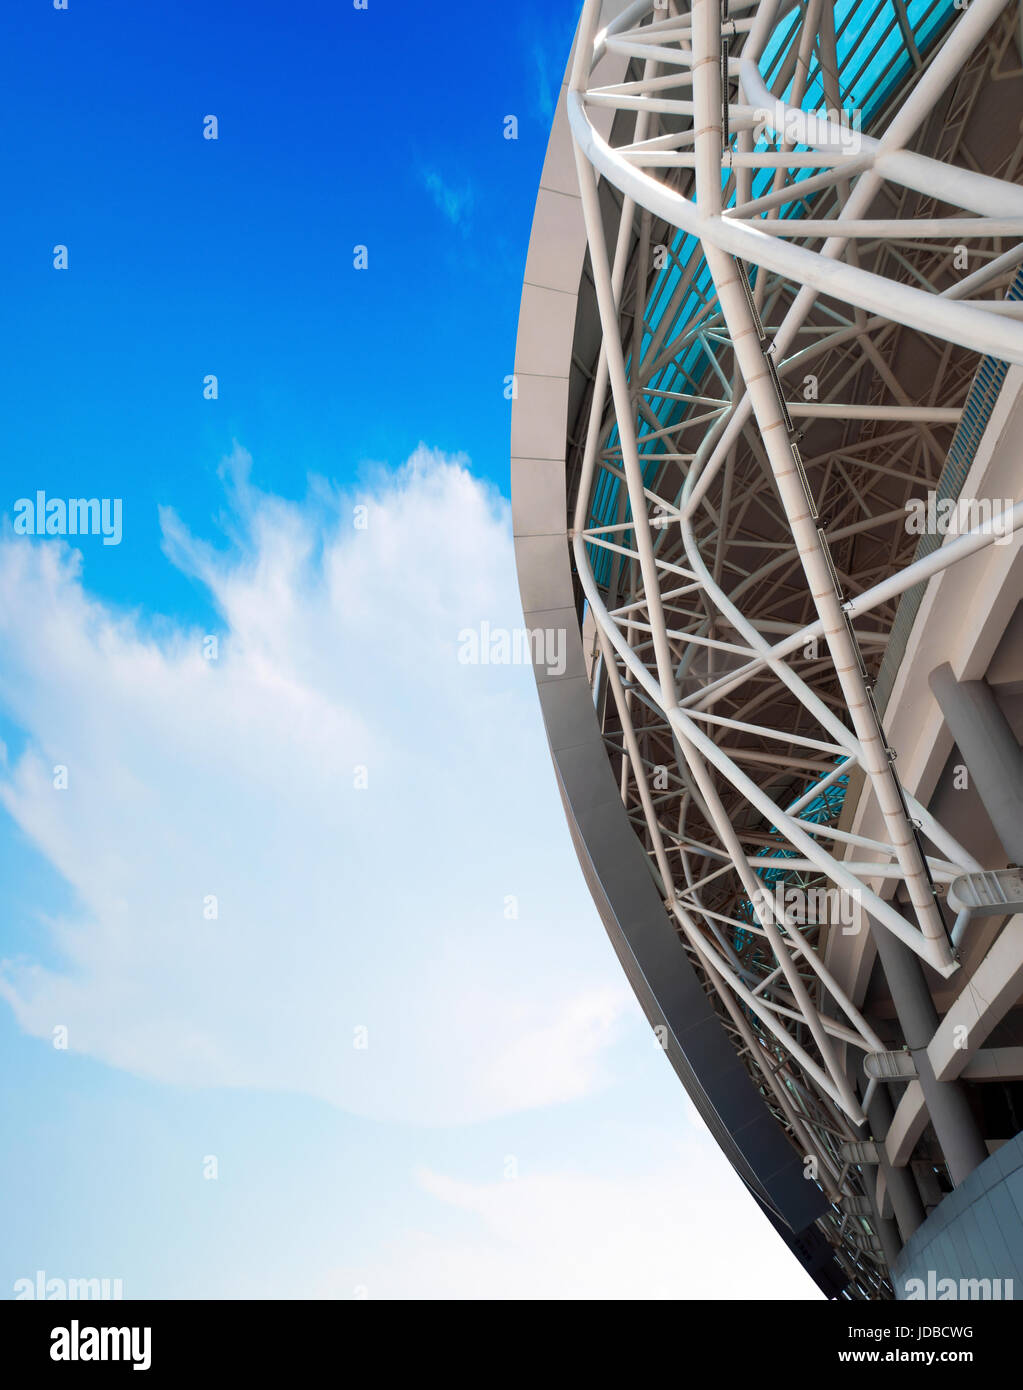 Blauer Himmel und weiße Wolken, die Stadion Stahl Struktur des lokalen. Stockfoto